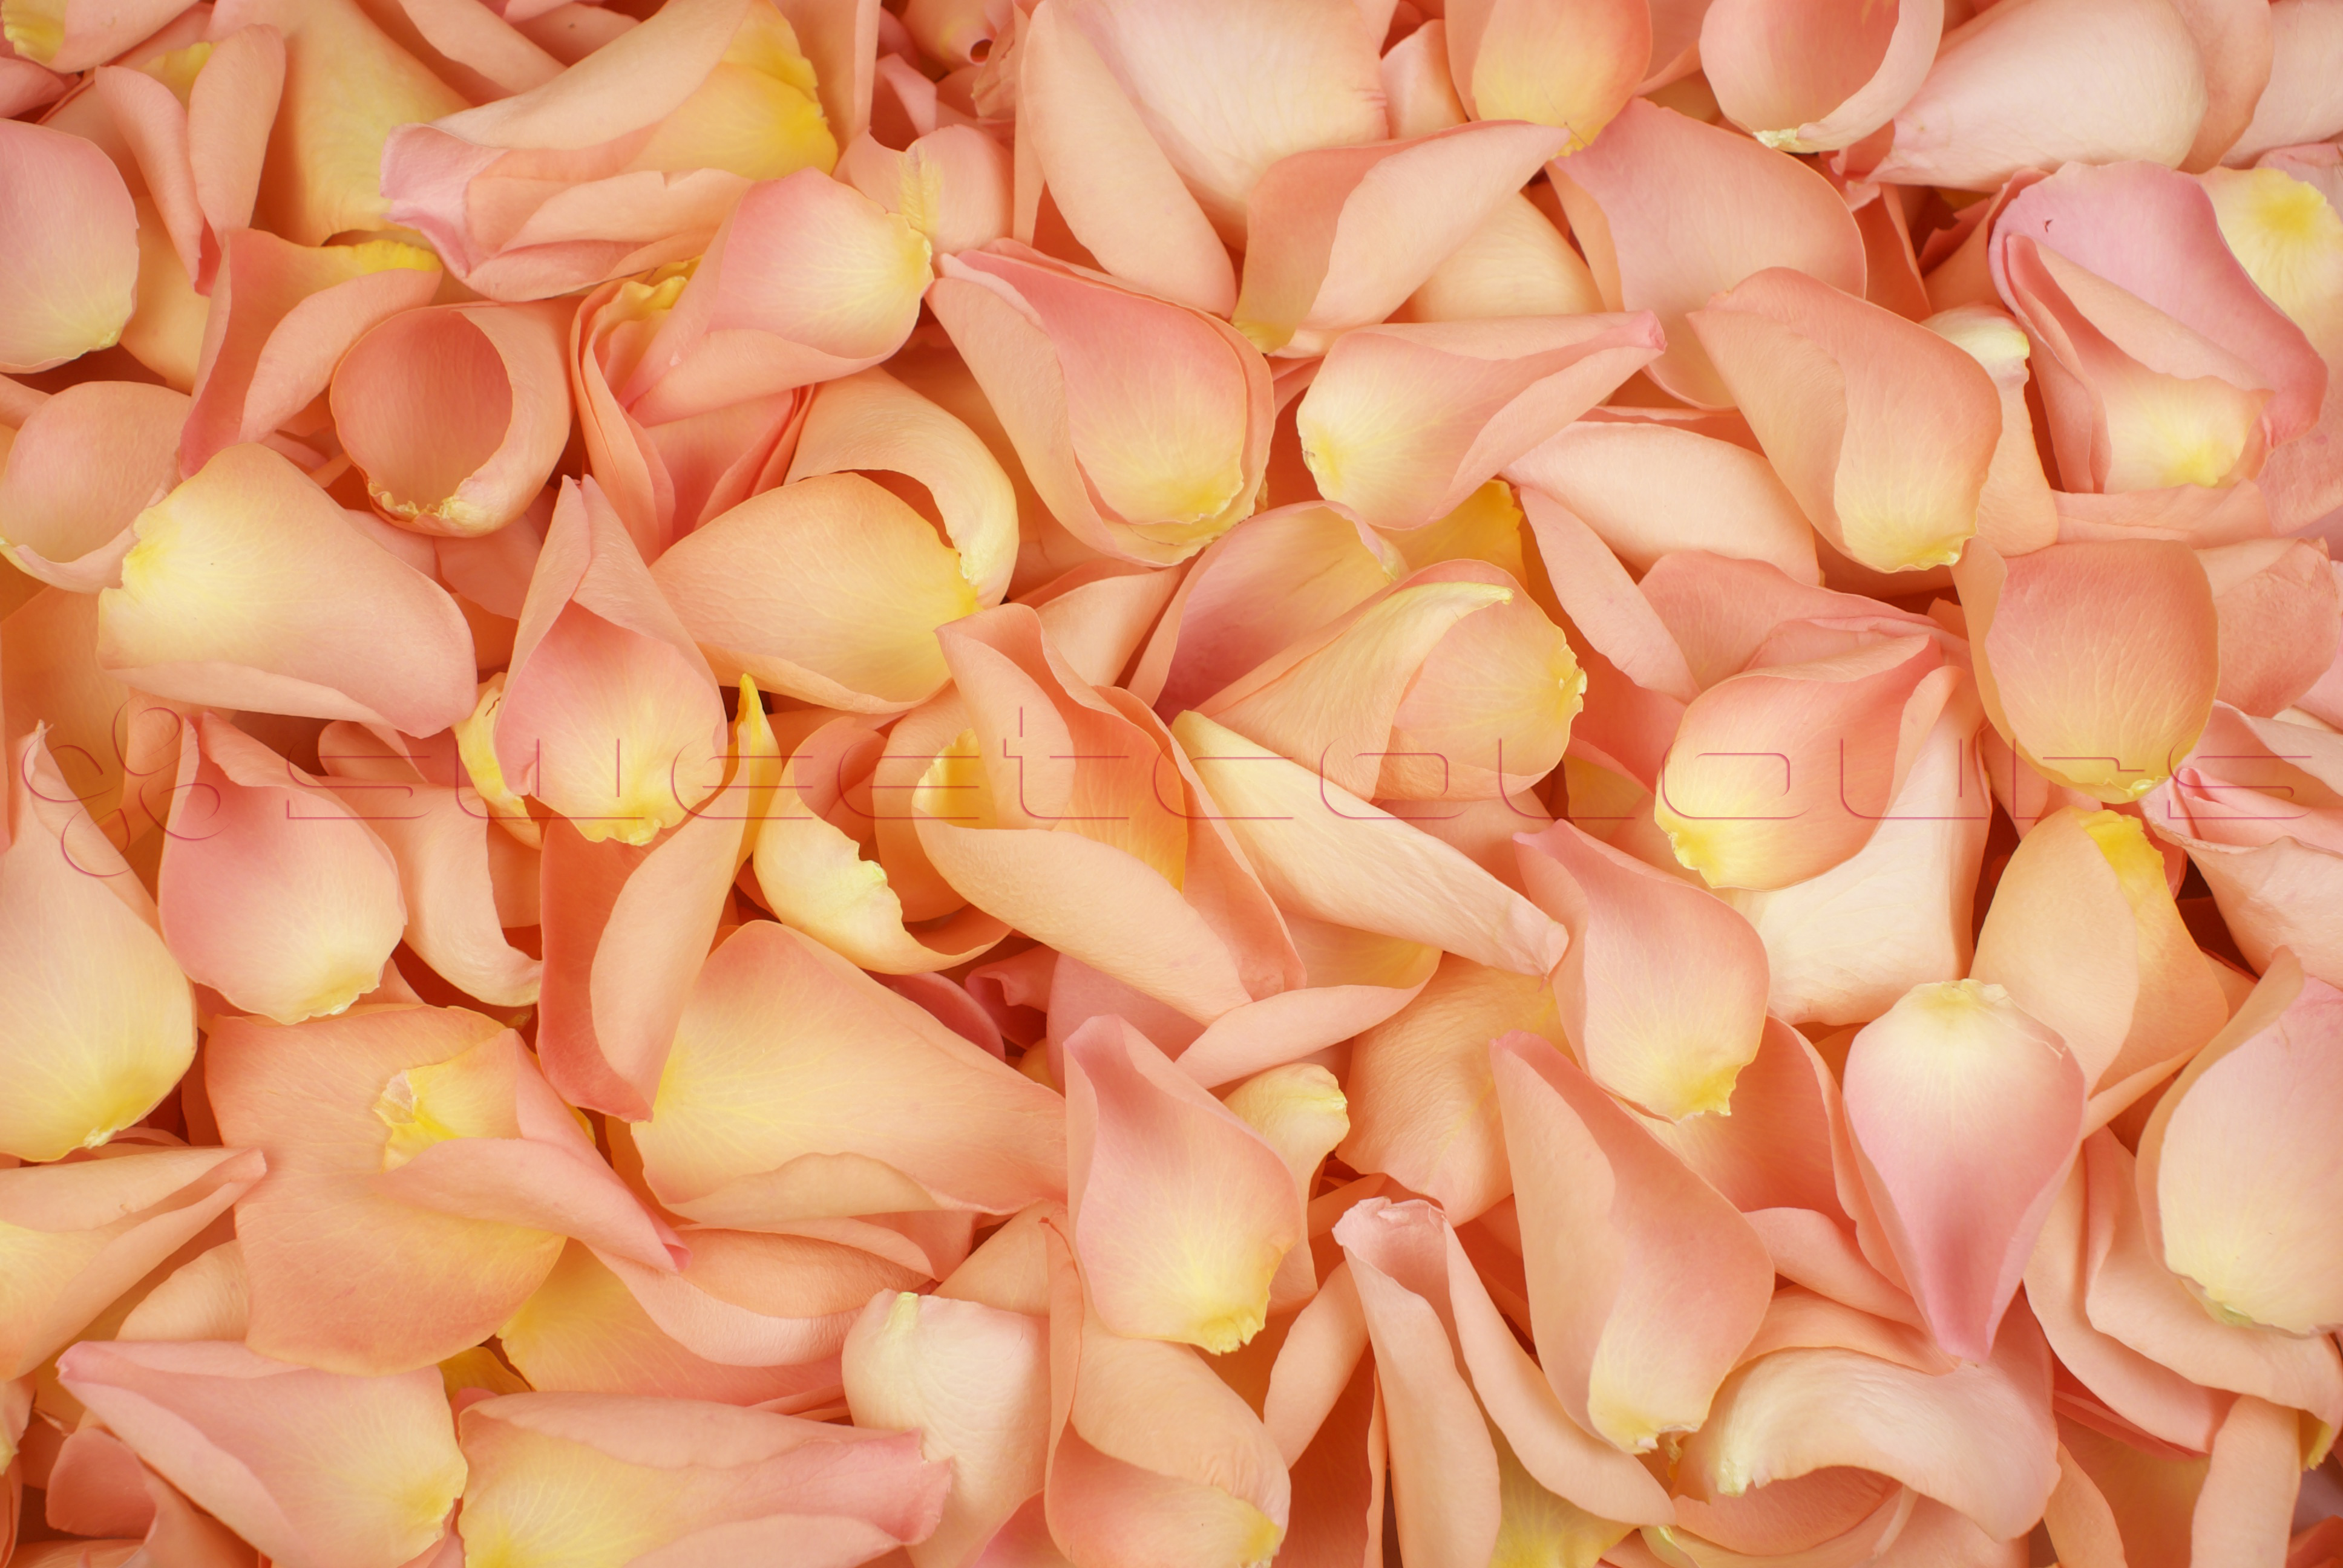 Petalos de rosa liofilizados Durazno